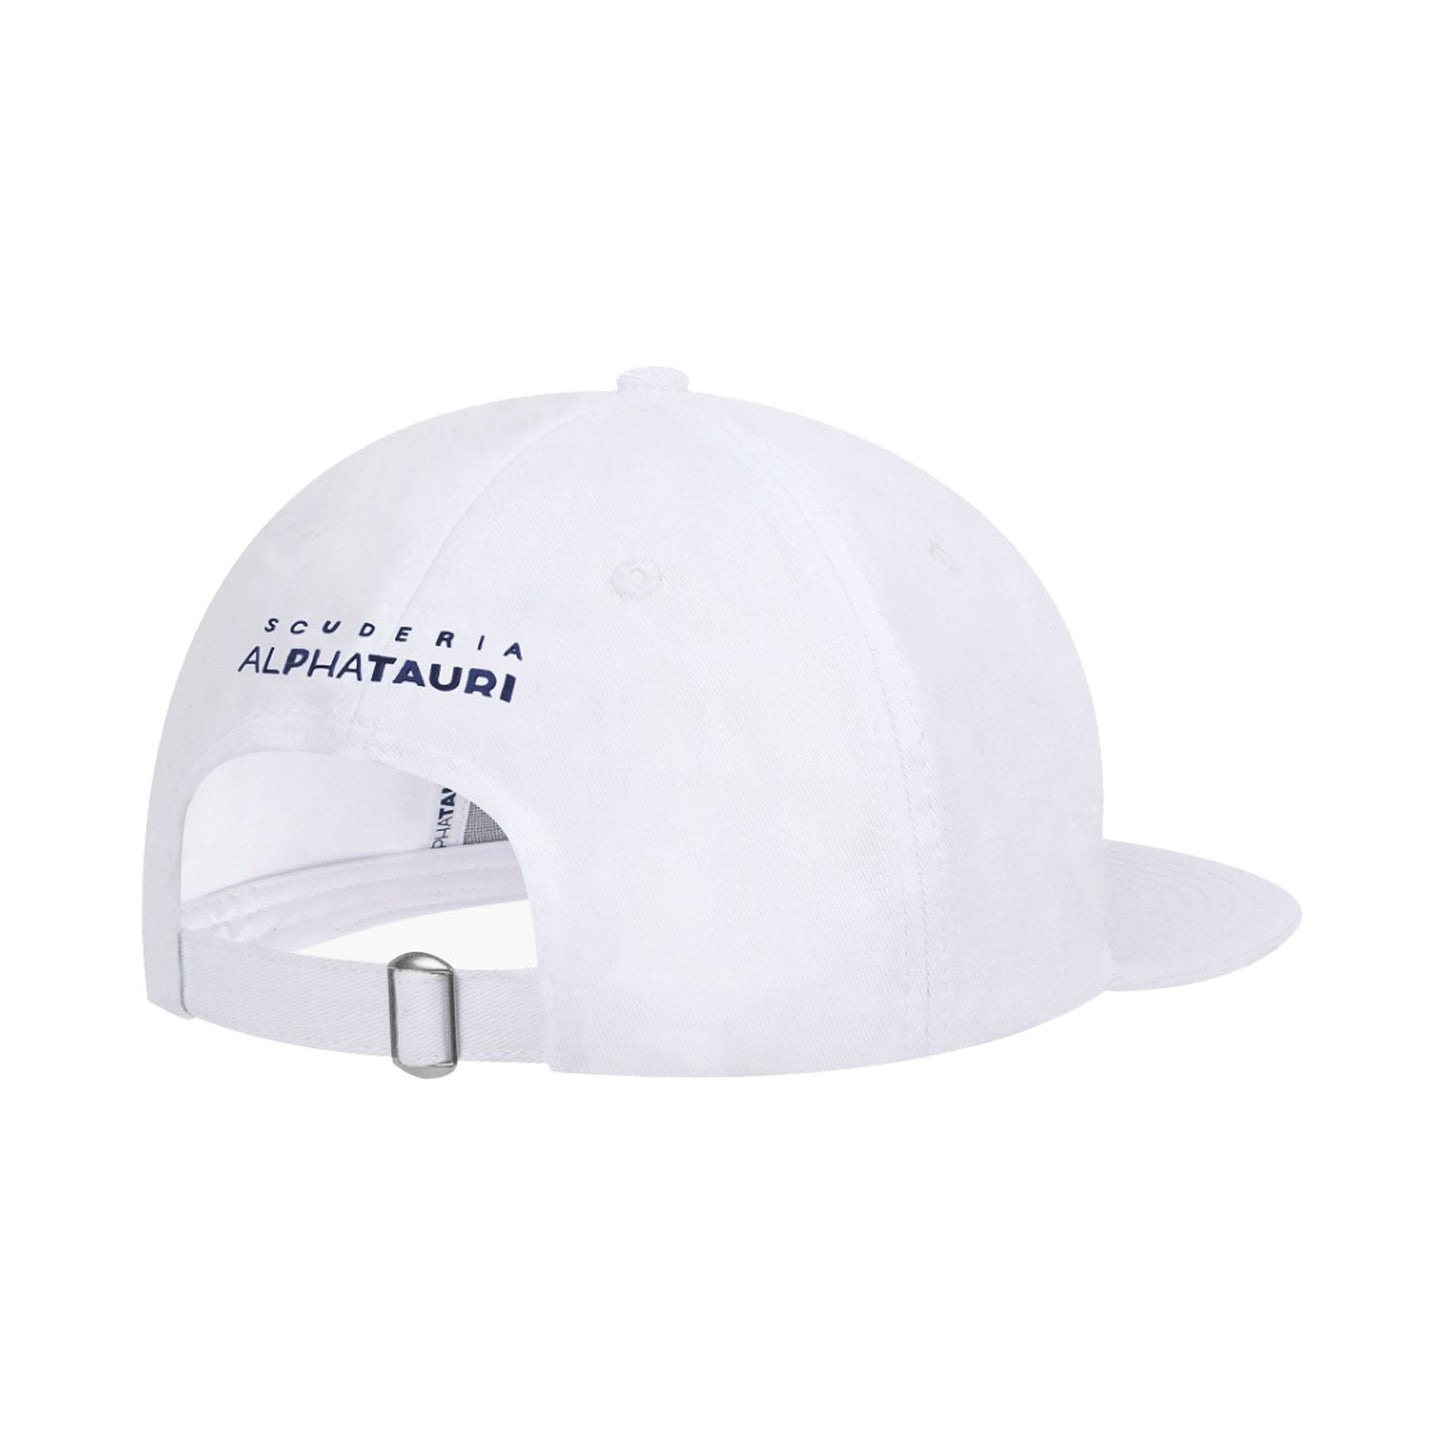 Men's baseball cap Flat Team Scuderia AlphaTauri F1